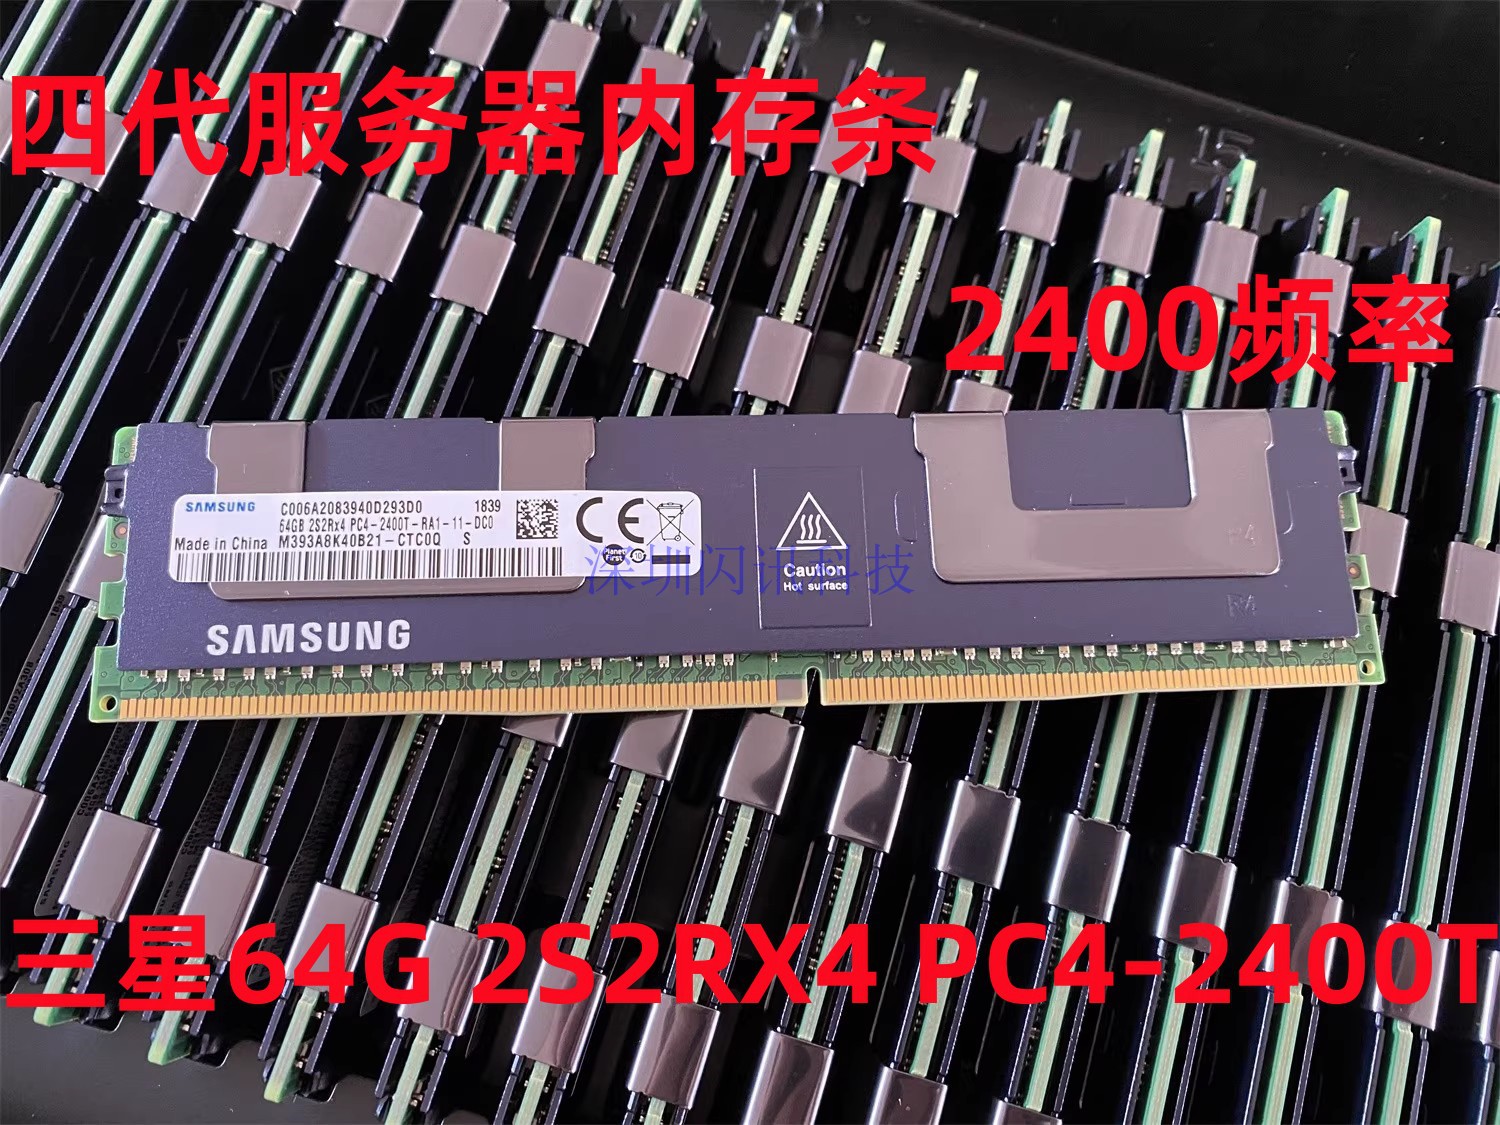 三星64G 2S2RX4 PC4-2400T 服务器内存64G DDR4 2400 2666ECC REG 电脑硬件/显示器/电脑周边 内存 原图主图